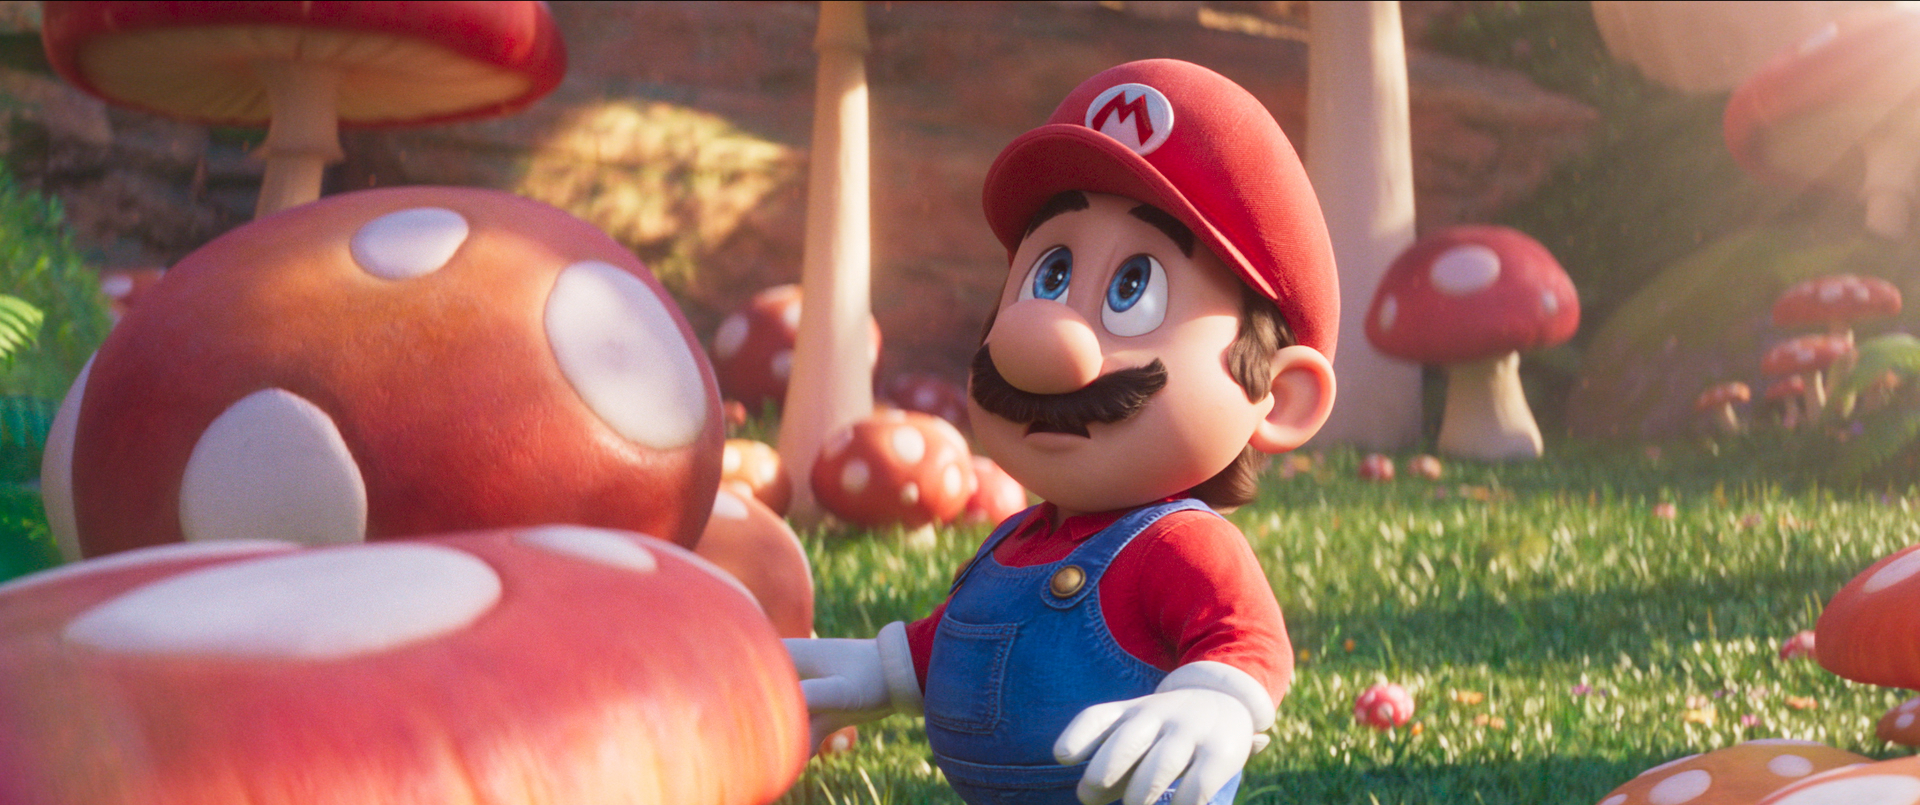 The movie Super Mario Bros.  happened, Twitter hates Mario's voice